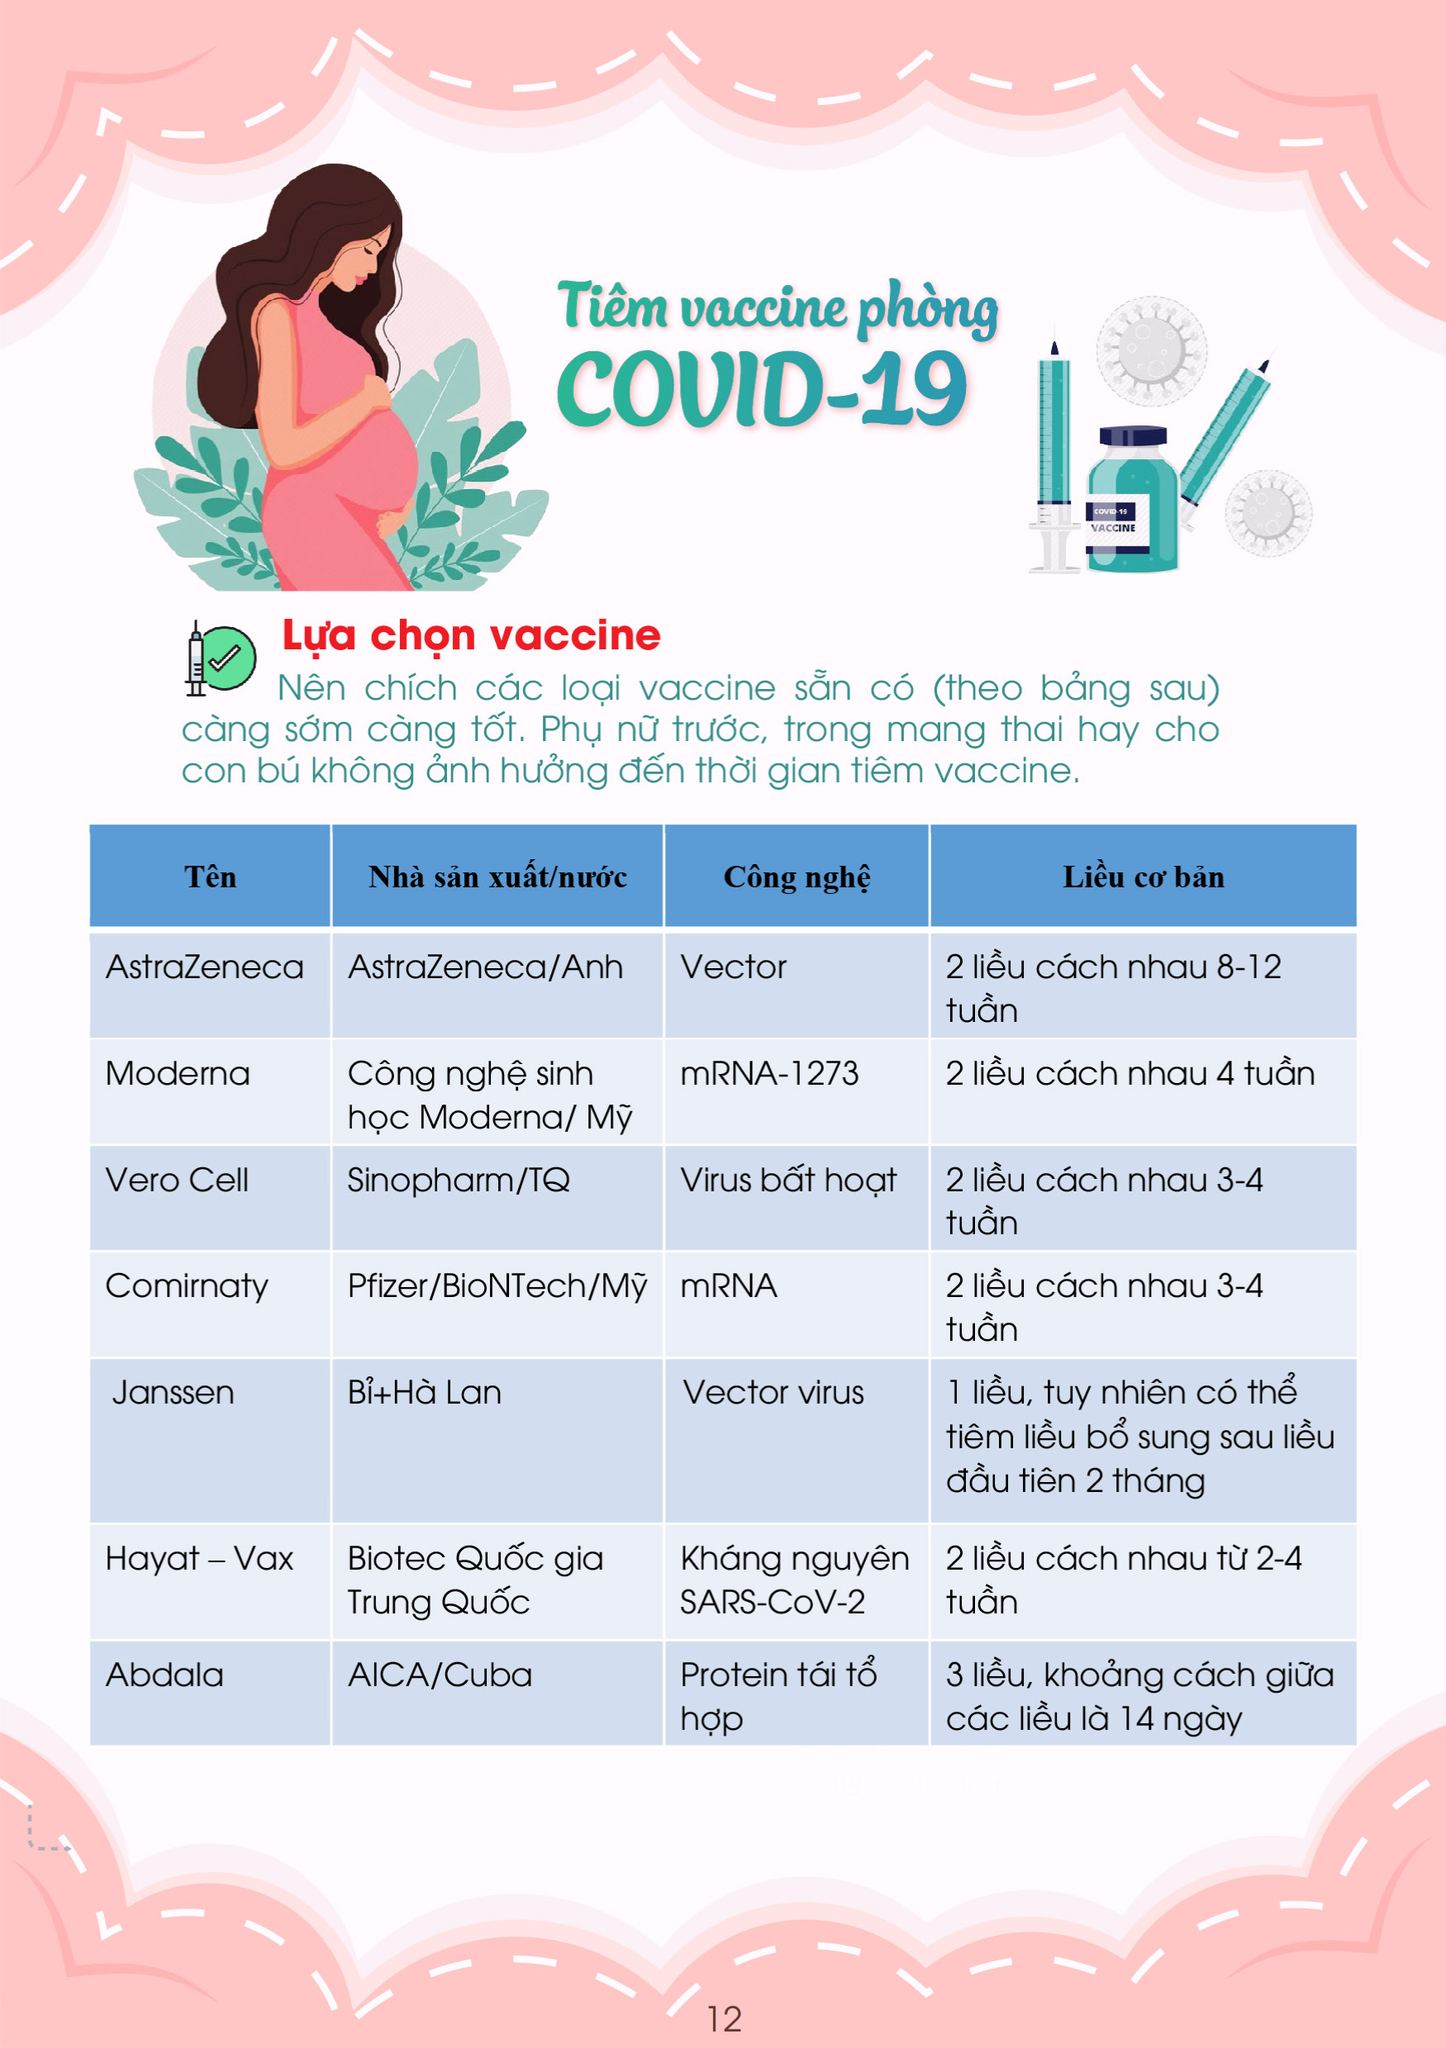 Chuyên gia hướng dẫn chăm sóc thai phụ trong dịch COVID-19 - Ảnh 13.